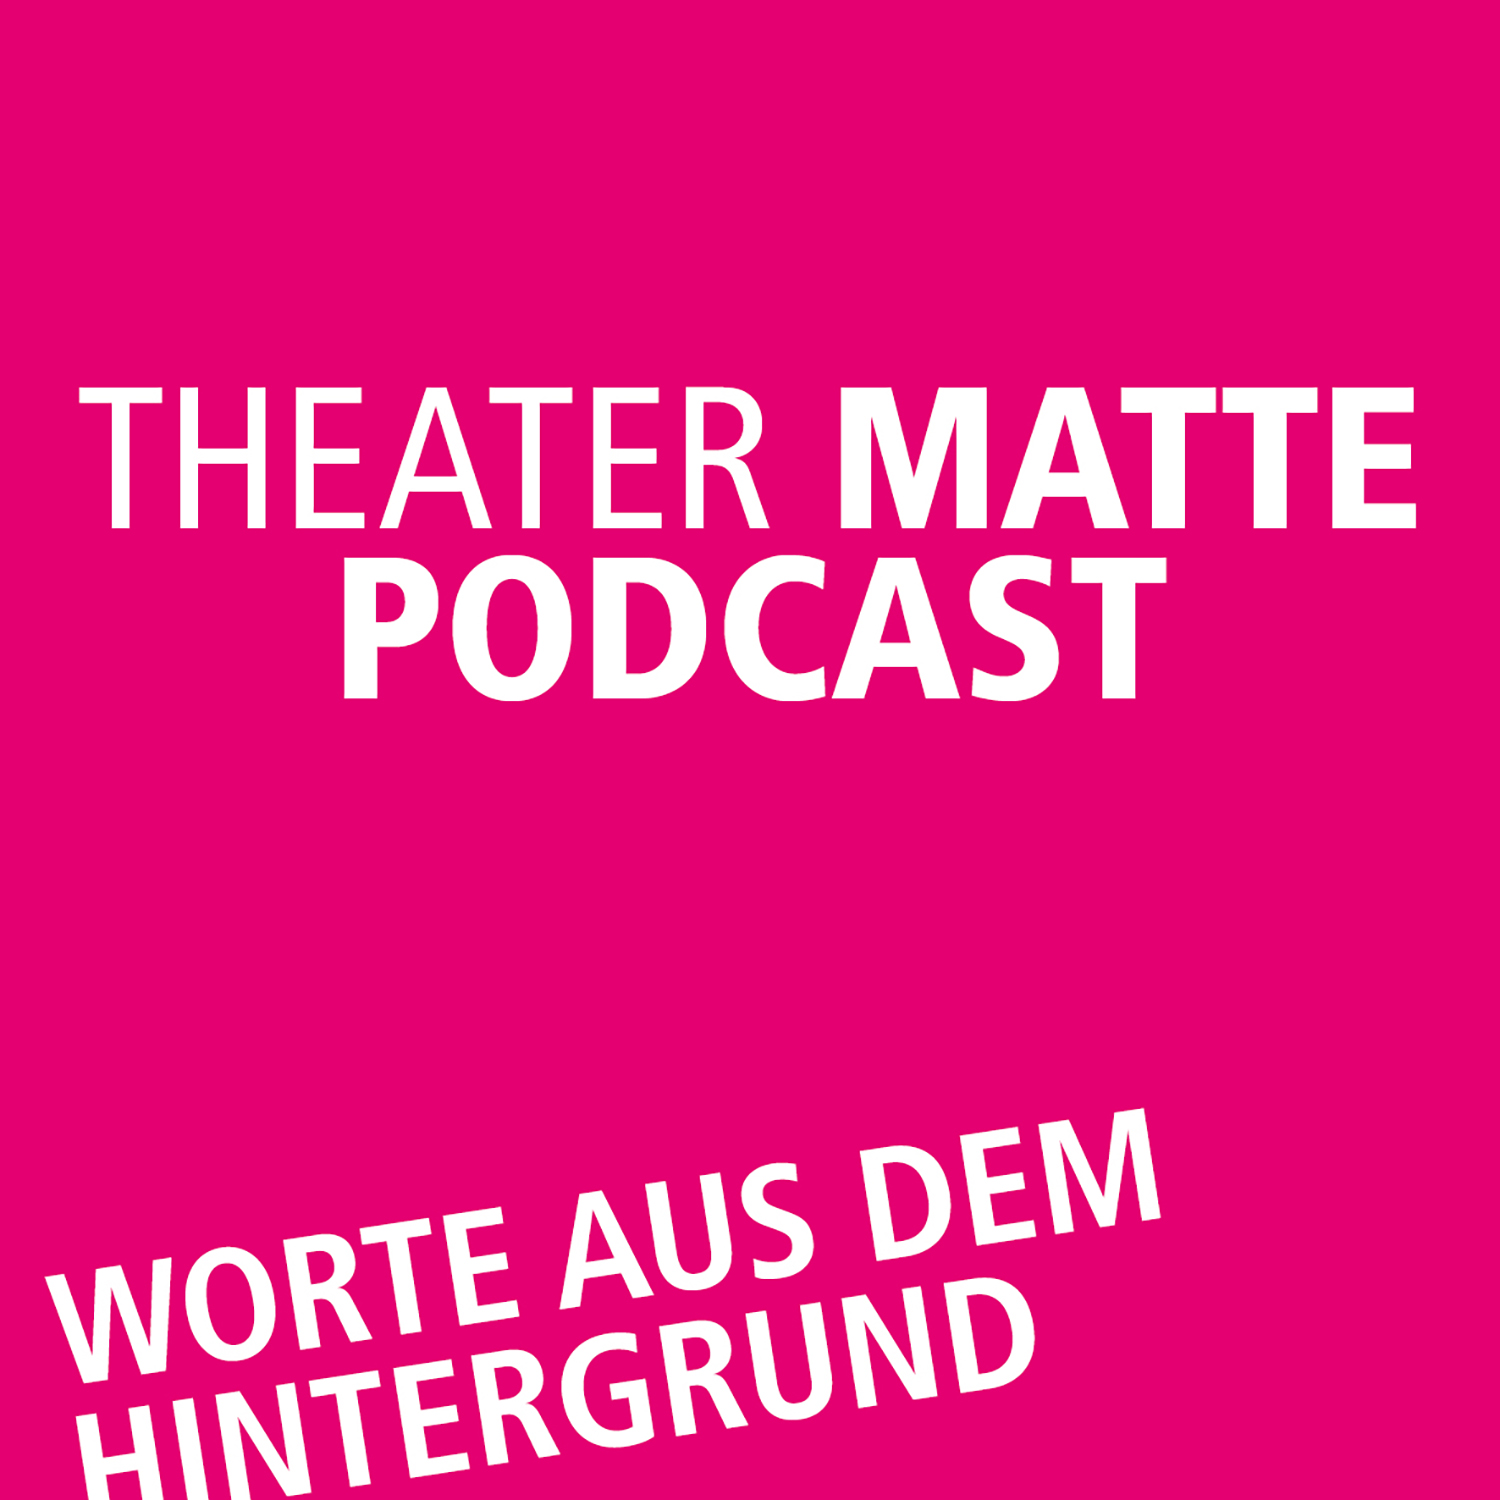 Theater Matte Podcast - Worte aus dem Hintergrund